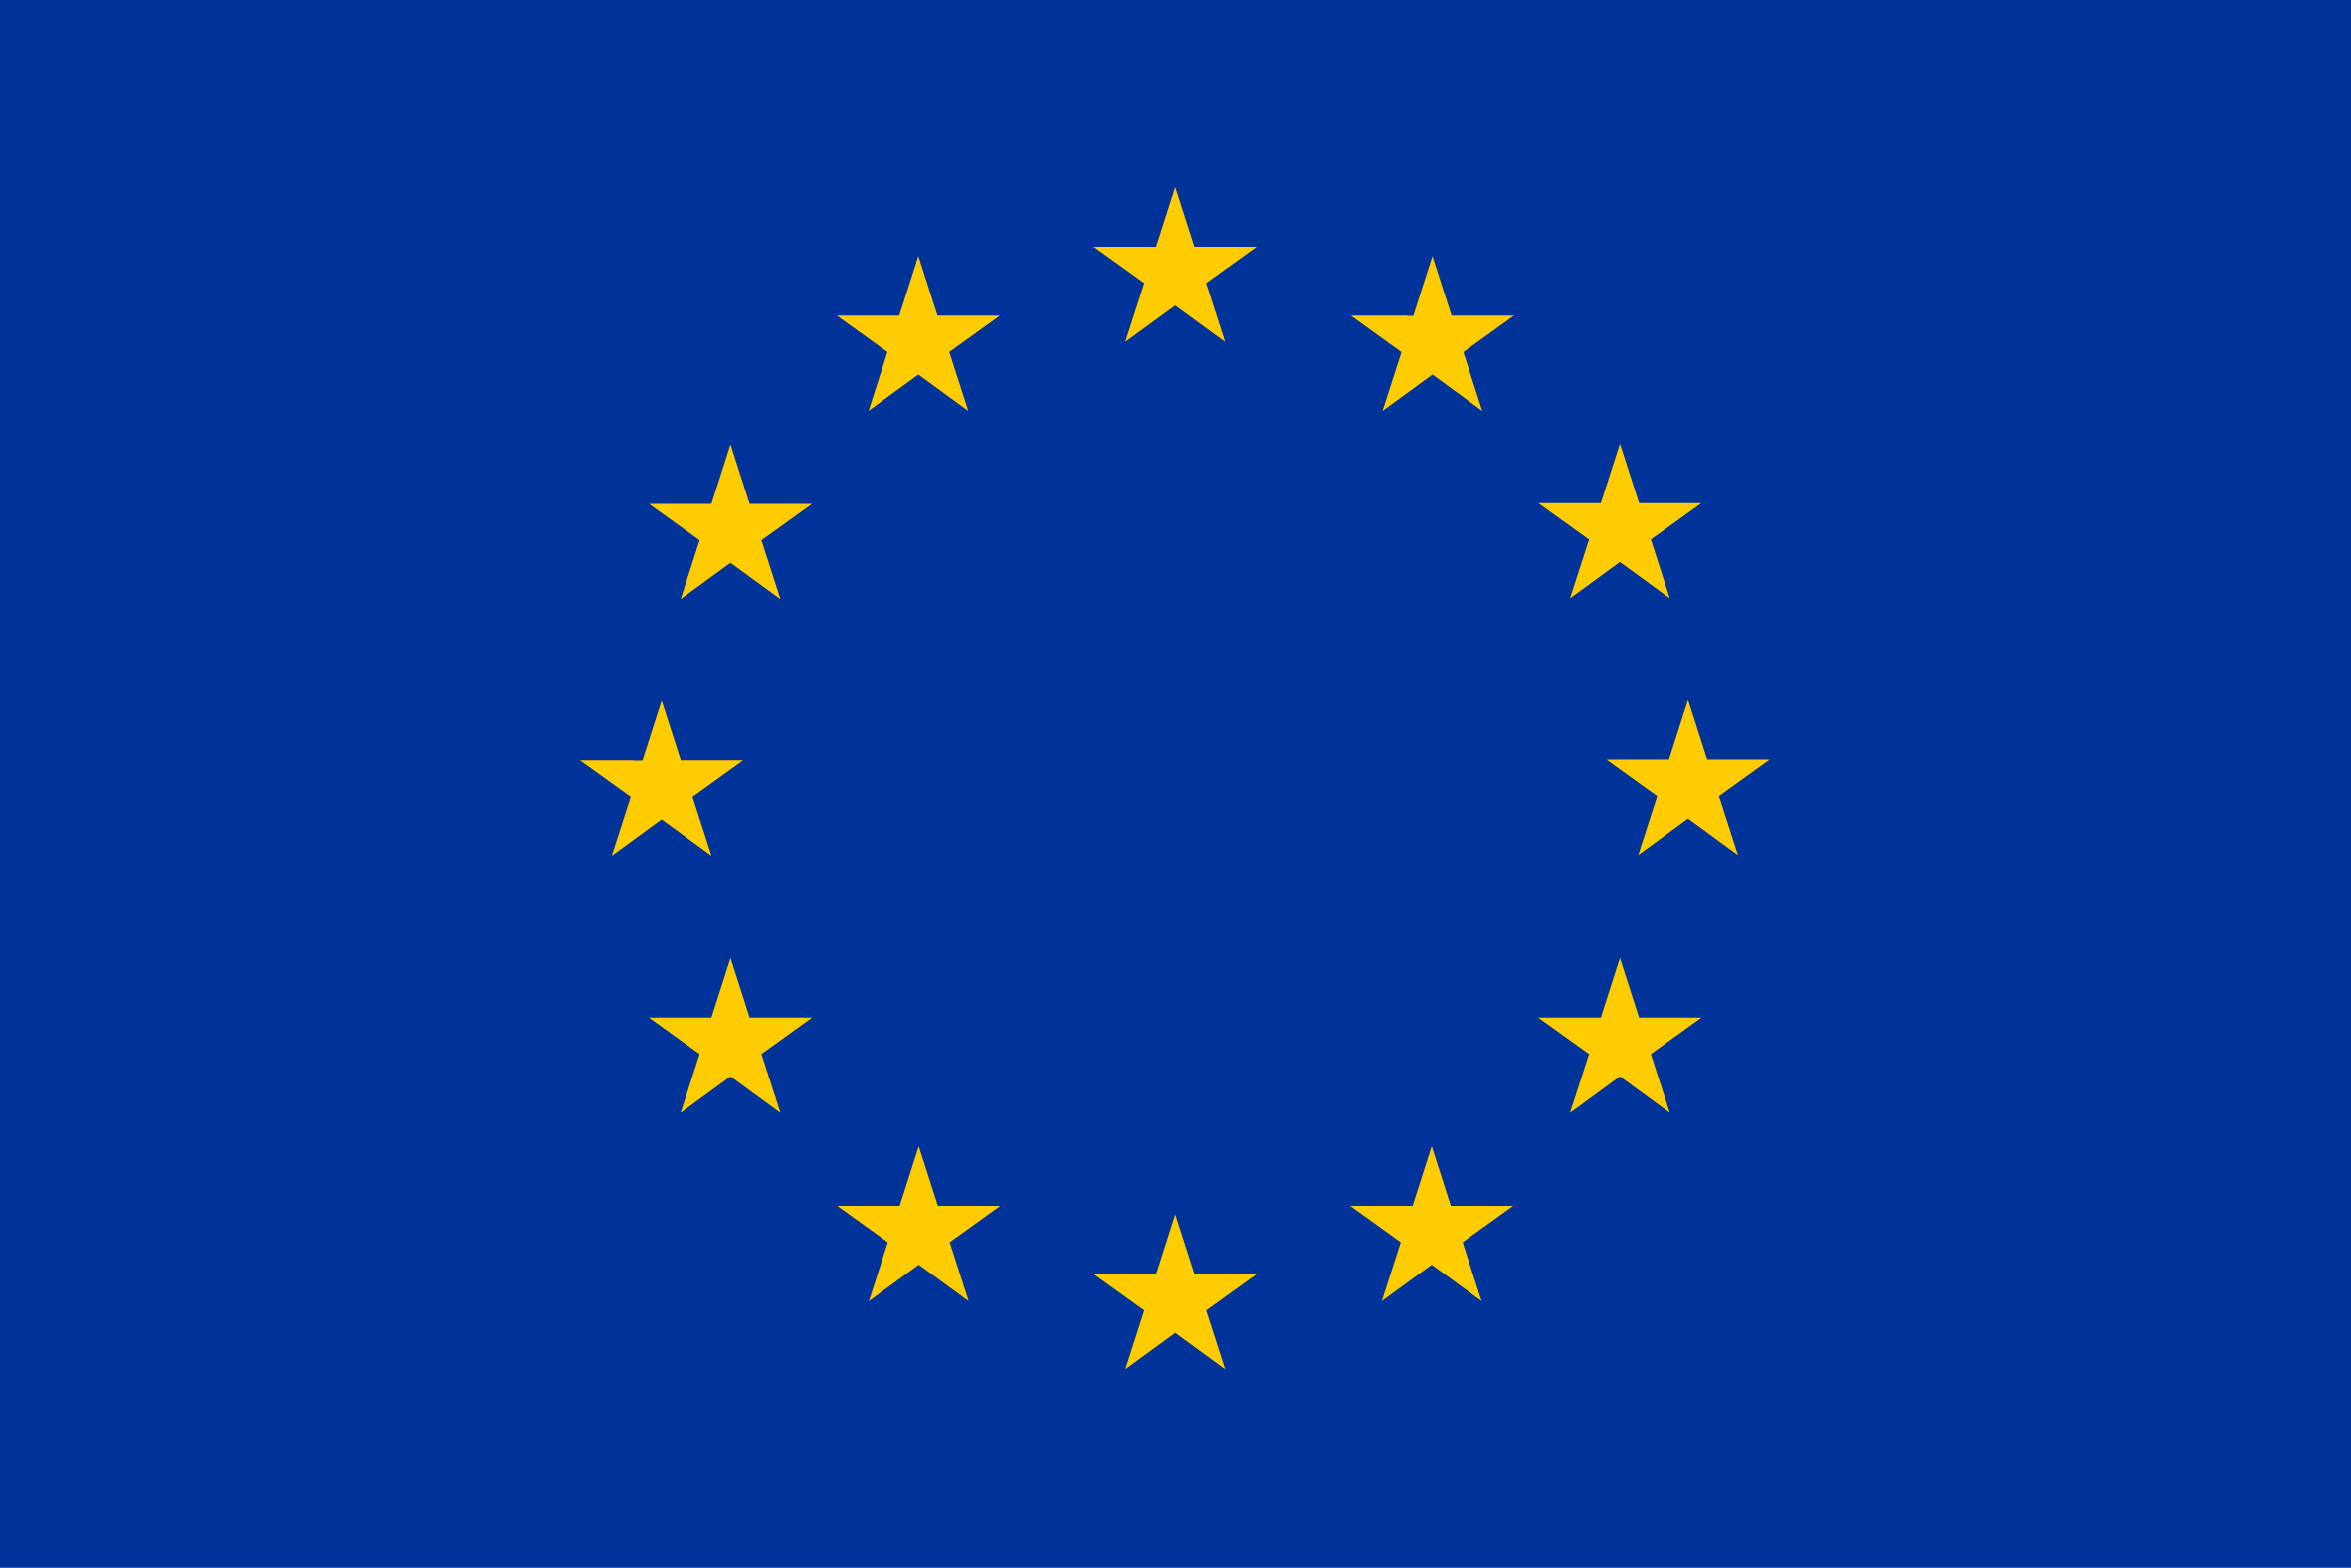 _images/eu_flag.jpg